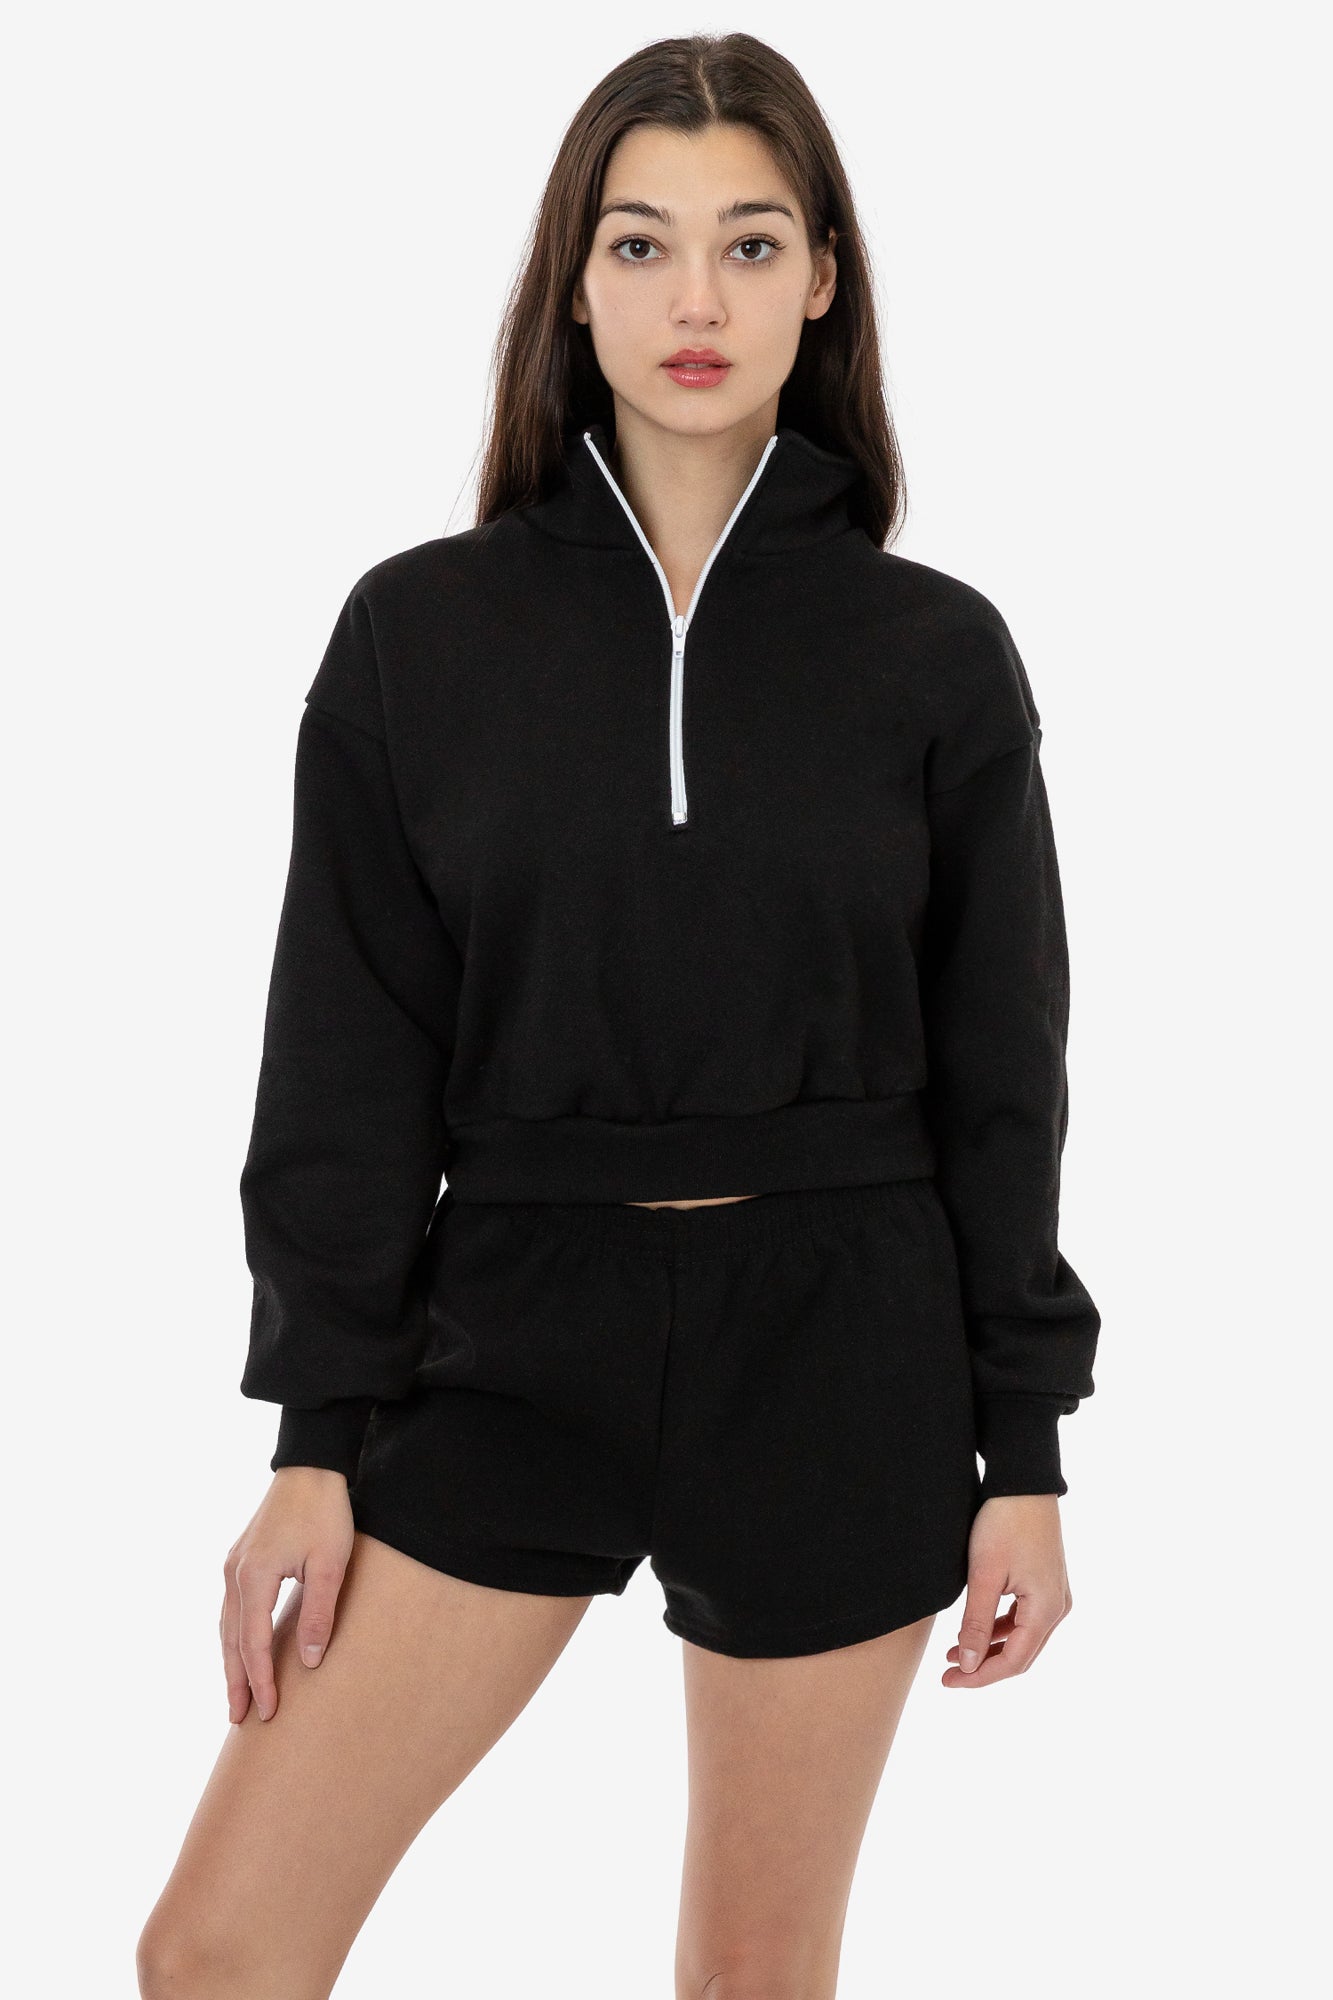 MOLayys Crop Sweatshirt,Women Half Zip Oversized Sweatshirts Long Sleeve  Solid Color Drop Shoulder Fleece Workout Pullover